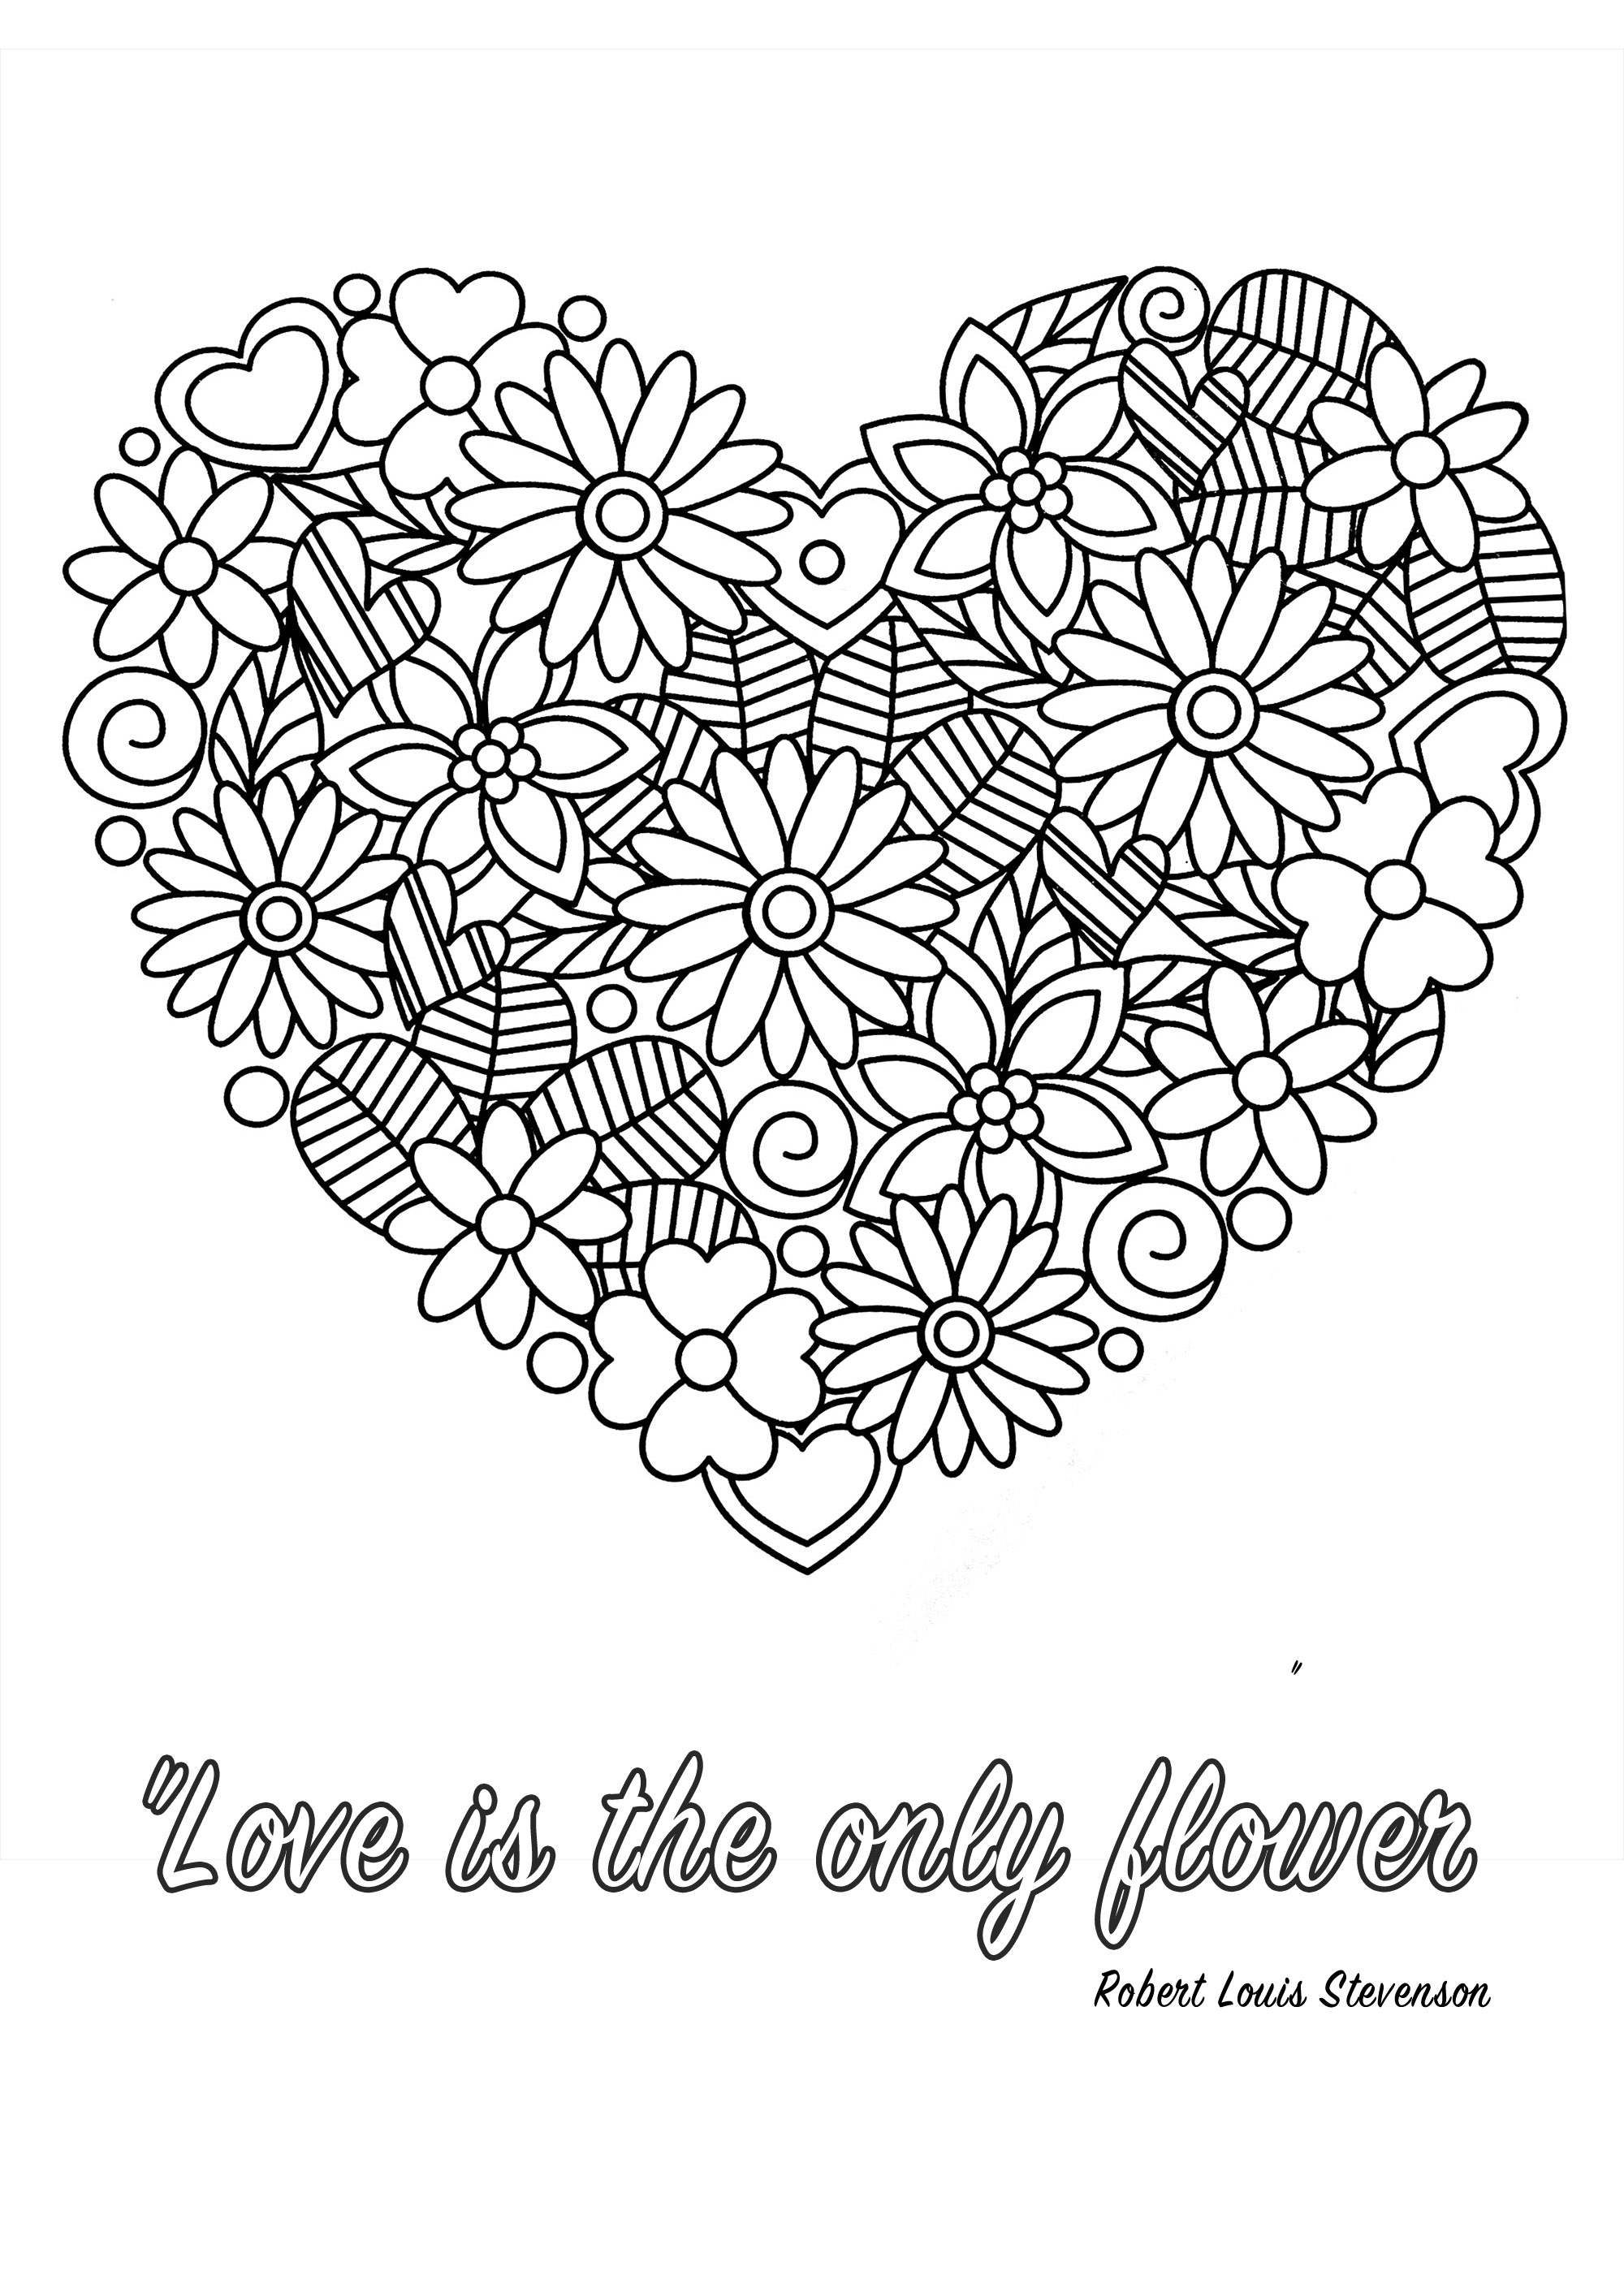 Die Liebe ist die einzige Blume. Robert Louis Stevenson Quote